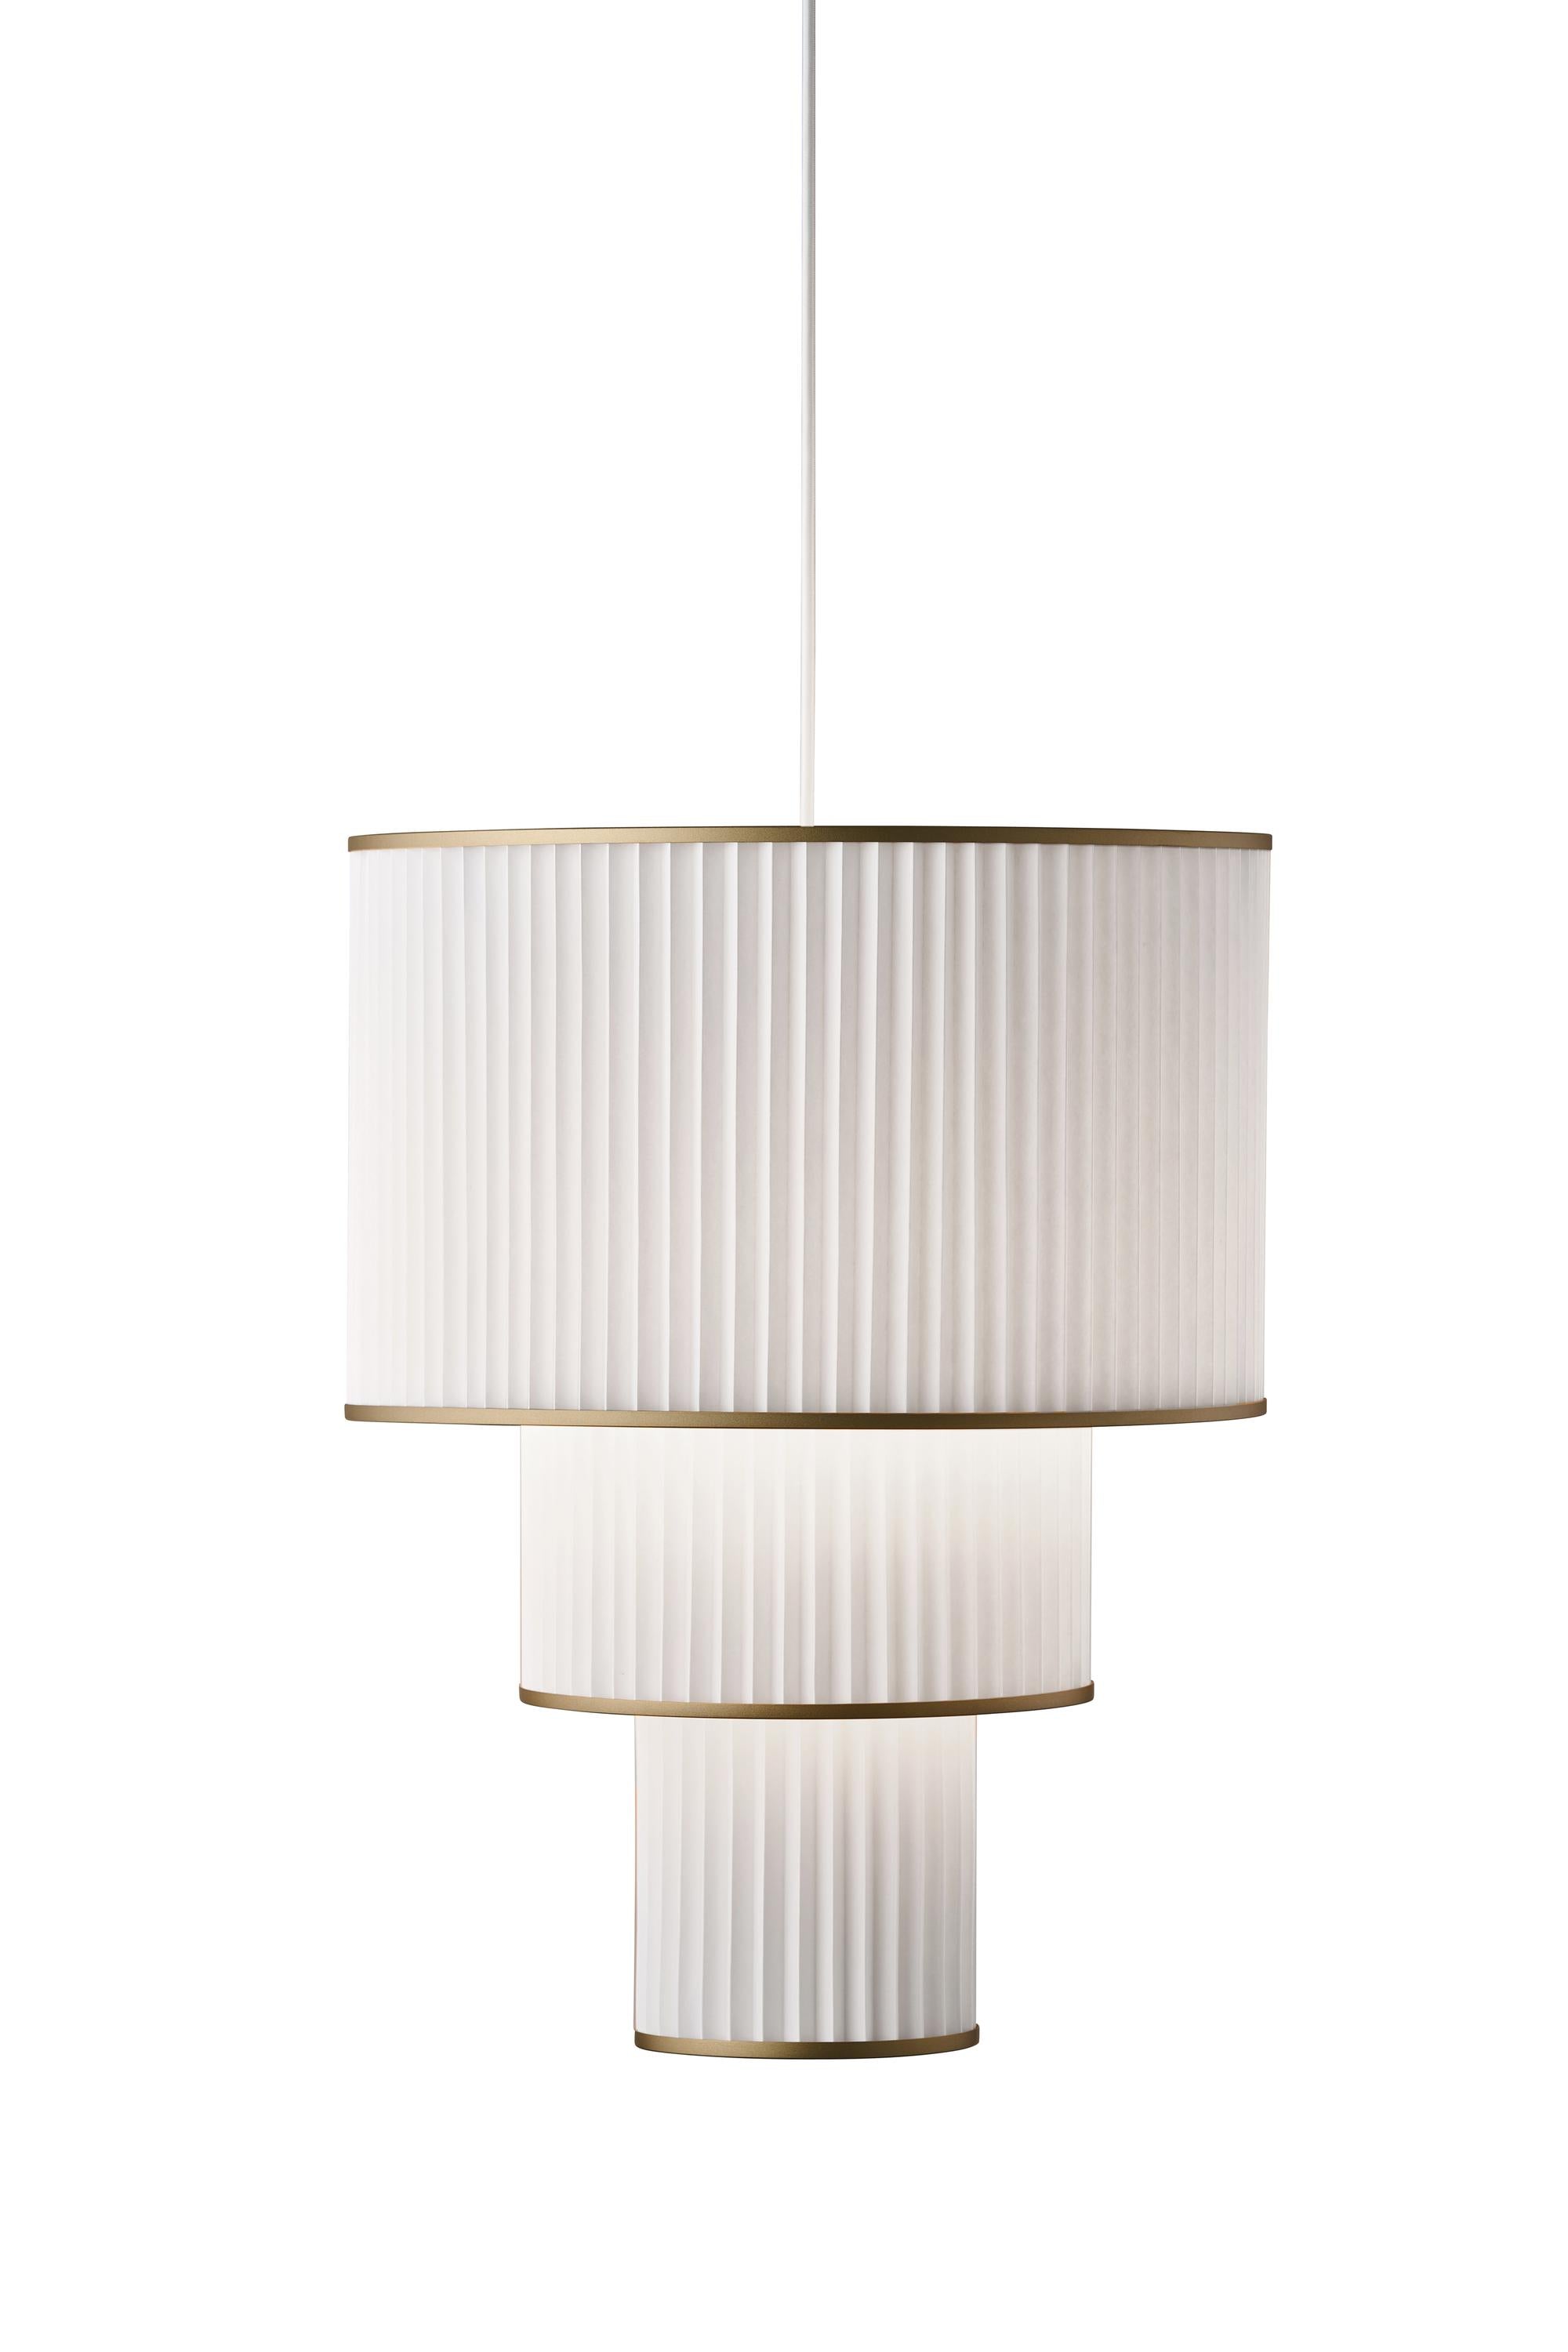 Le Klint Plivello Suspension Lamp Golden/White med 3 nuancer (S M L)